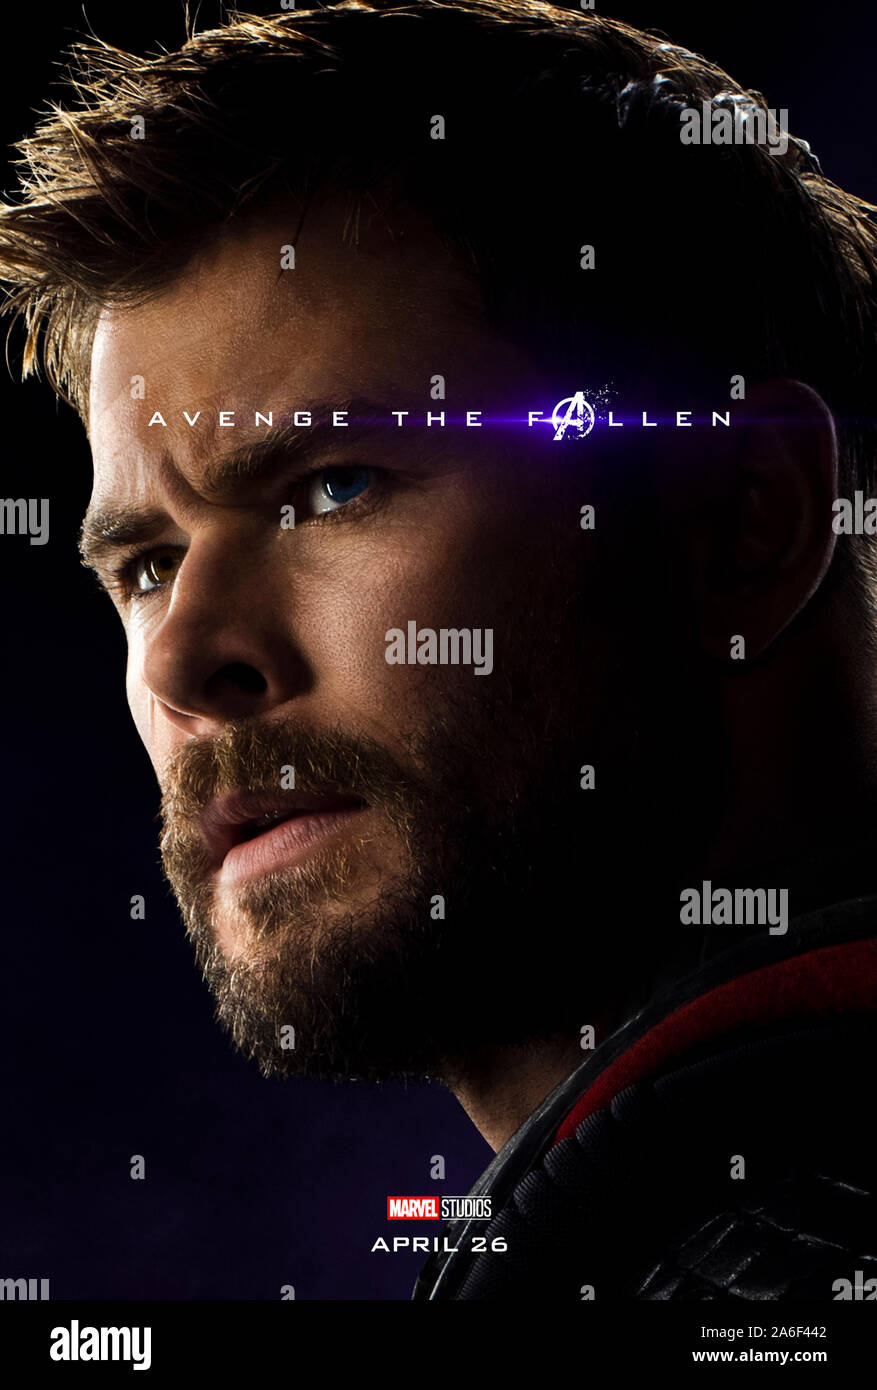 Affiche pour l'avance de caractères Avengers : Endgame (2019) réalisé par Anthony et Joe Russo avec Chris Hemsworth en Thor. La conclusion épique et 22e film dans l'univers cinématographique de Marvel. Banque D'Images